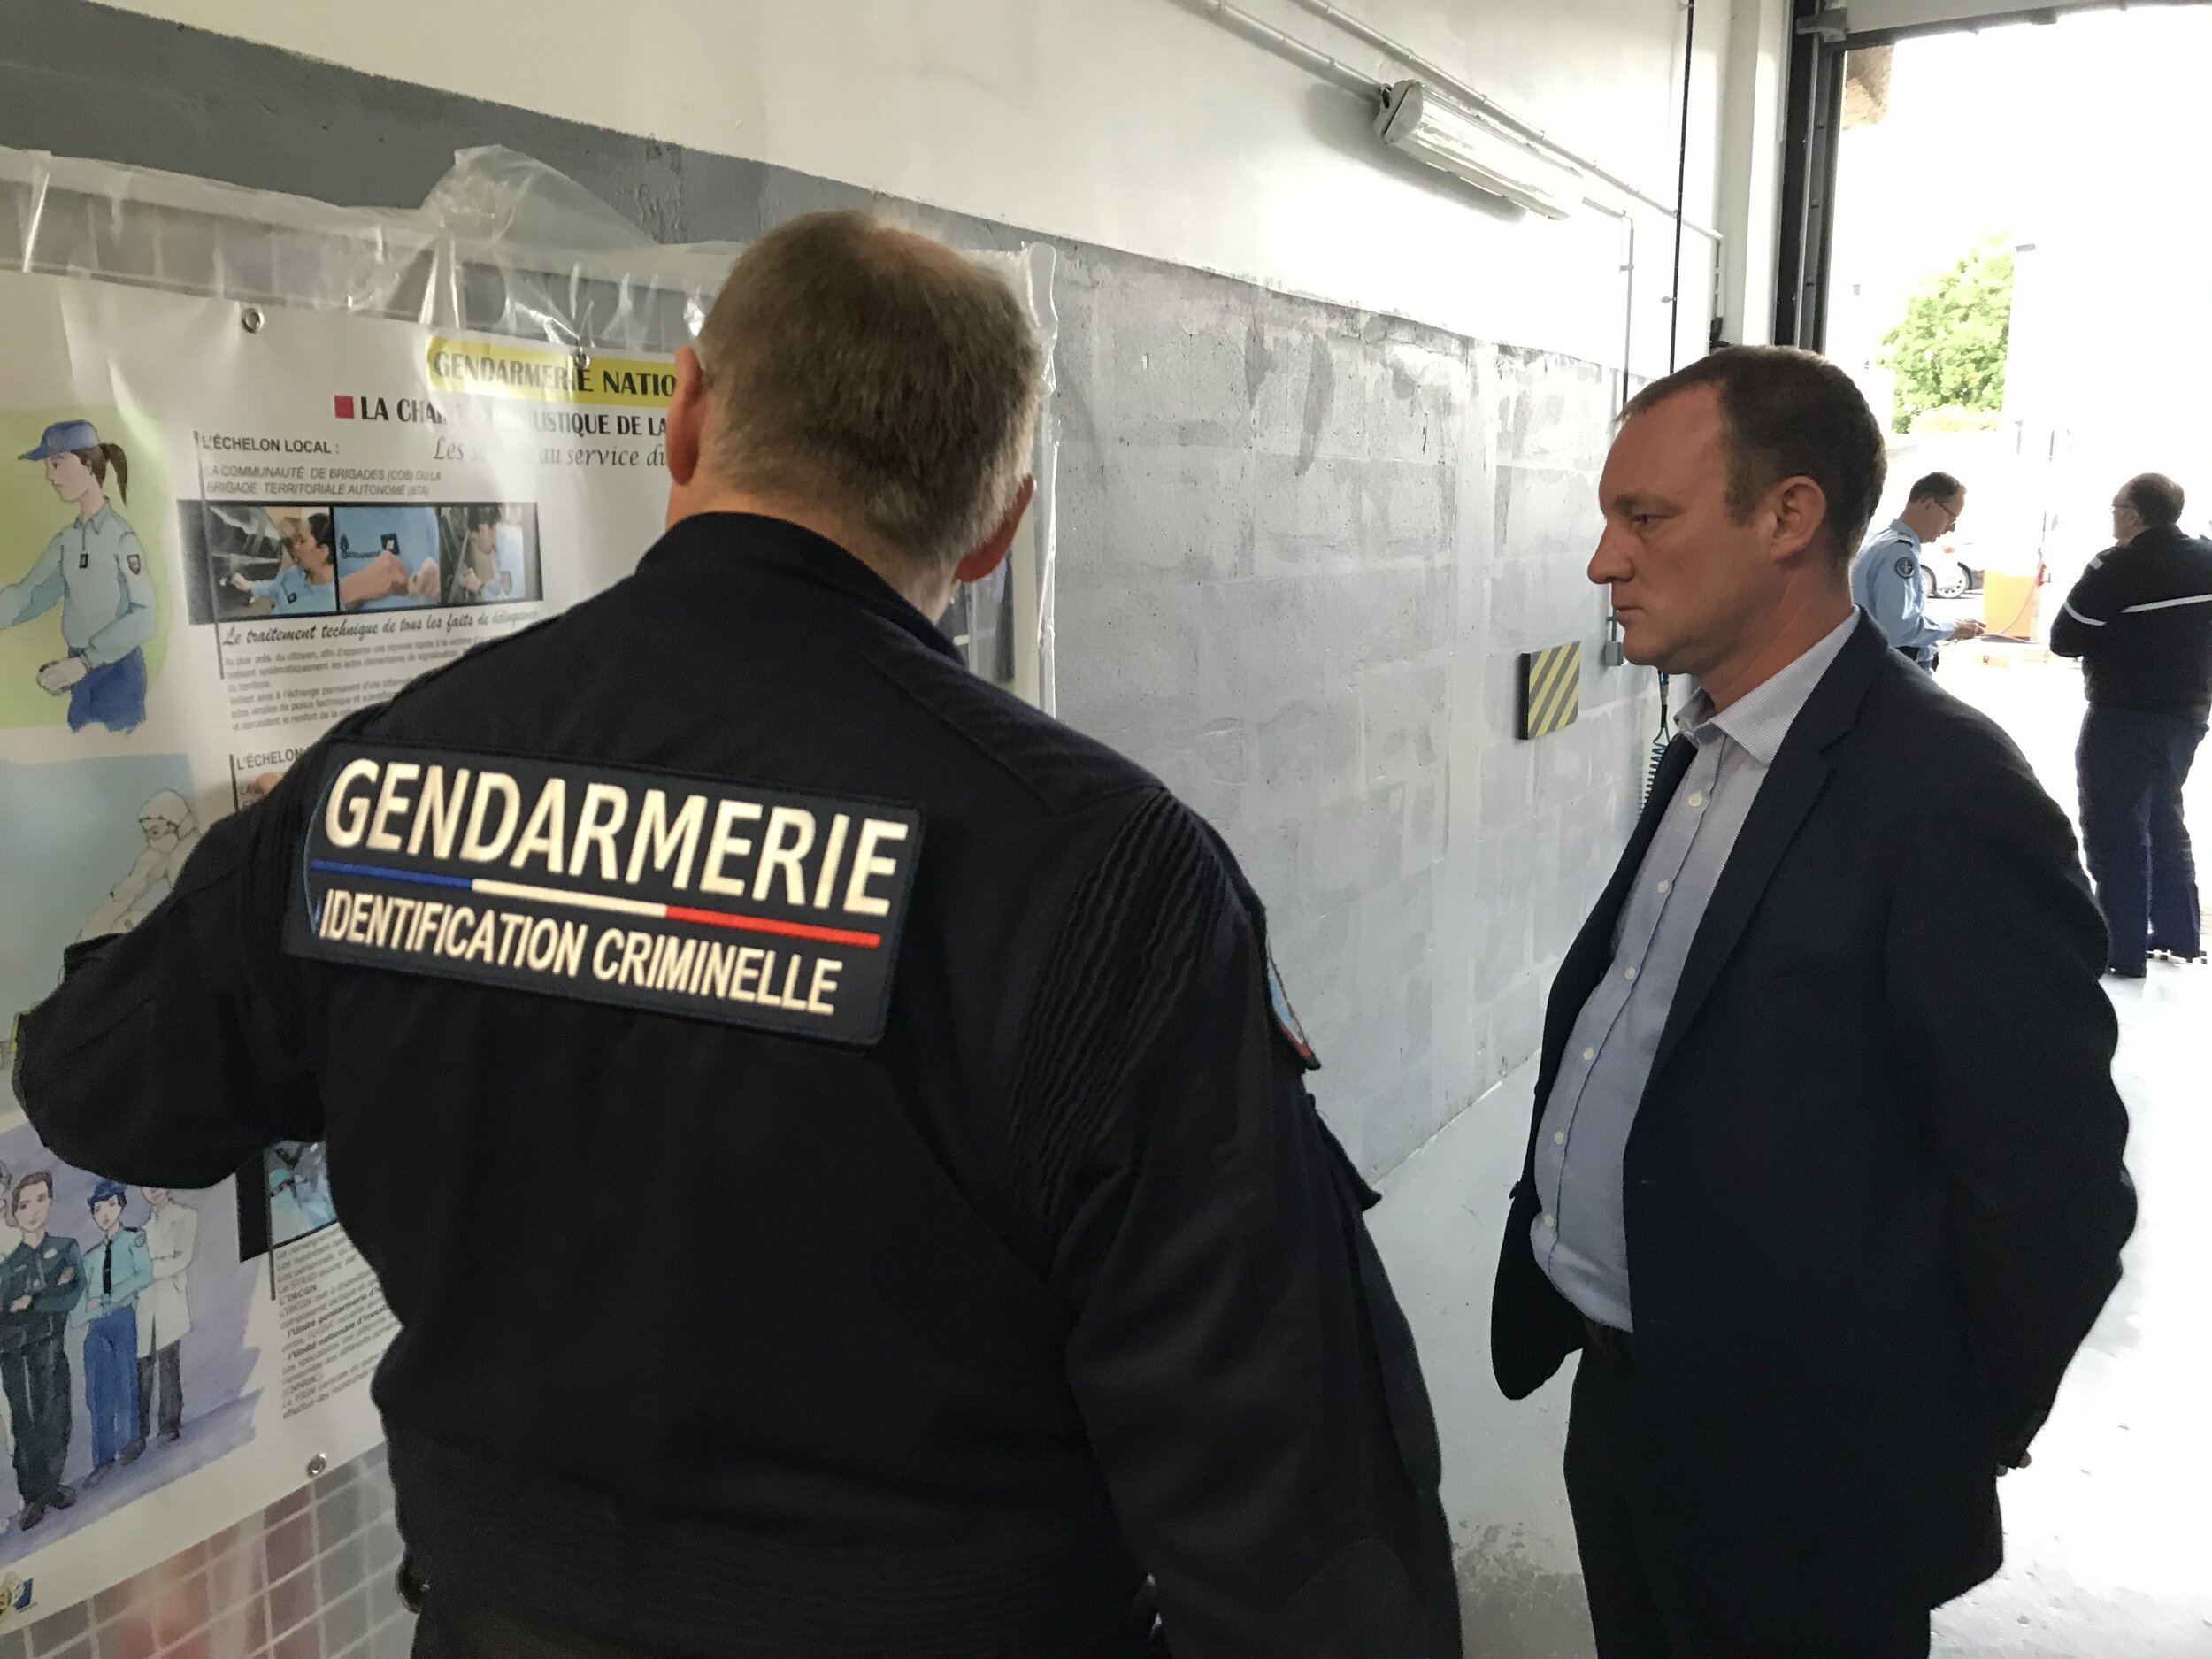 Dans chaque département, le groupement de gendarmerie dispose d'une cellule d'identification criminelle et numérique, qui représente le premier niveau d'appui spécialisé en matière d'investigations criminalistiques.